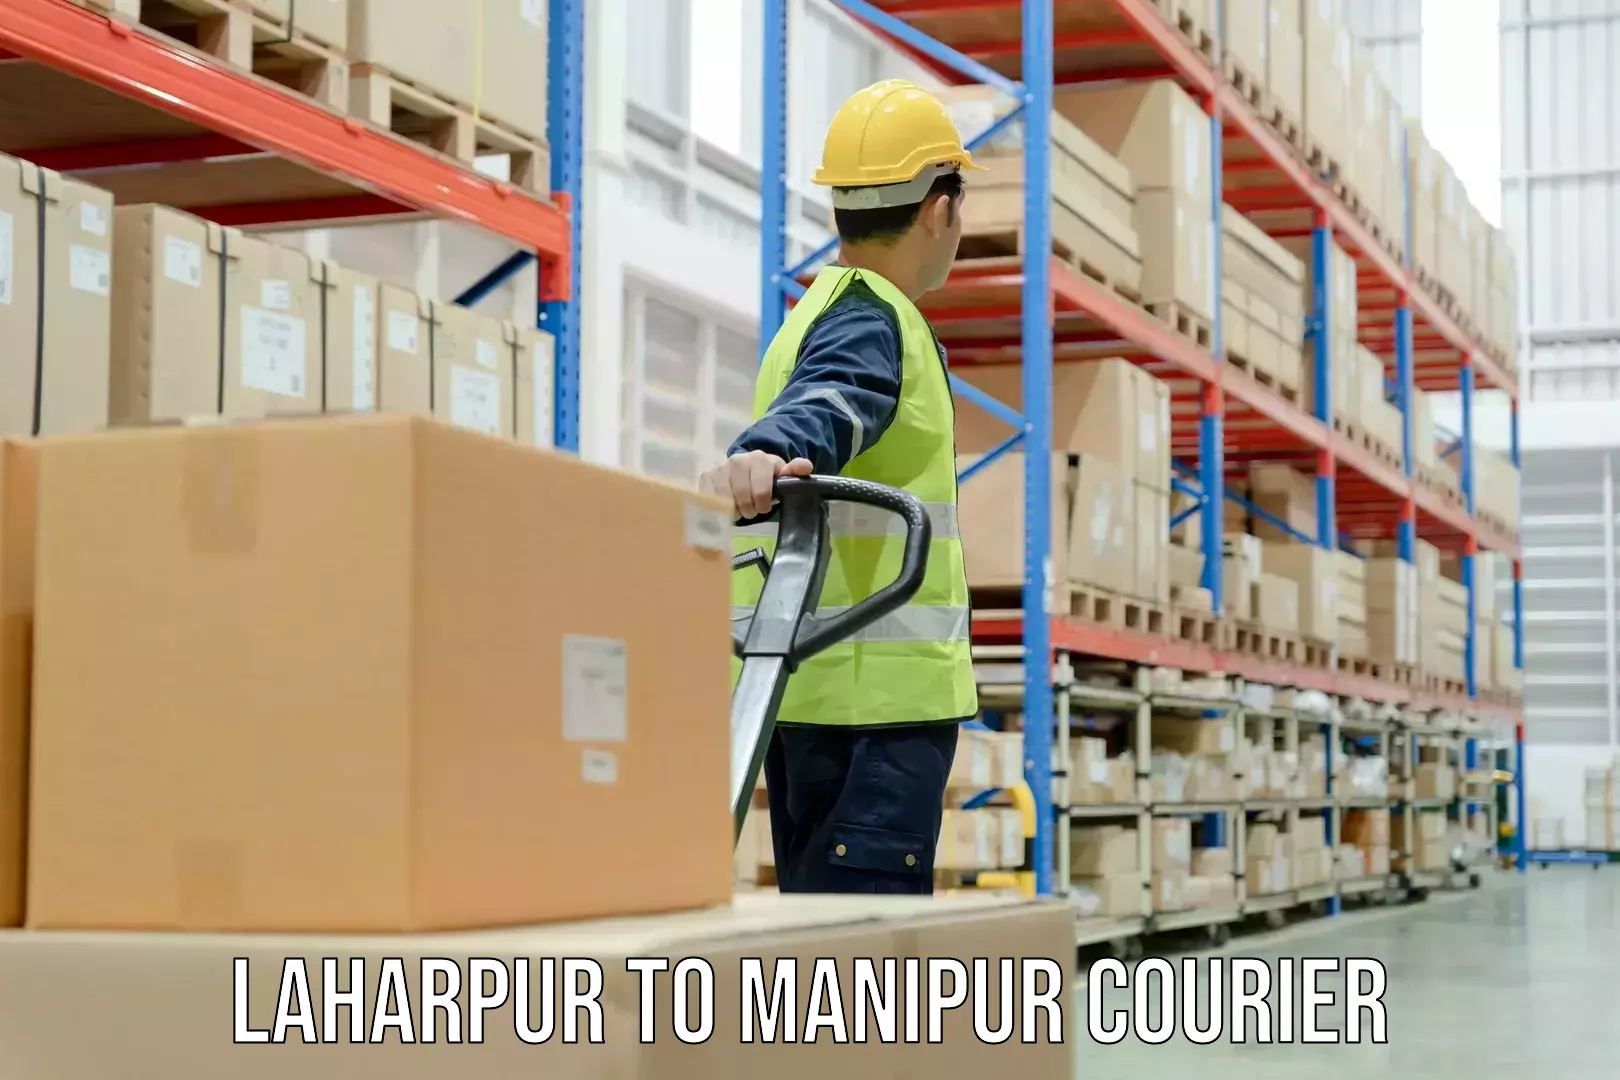 Ground shipping Laharpur to Churachandpur